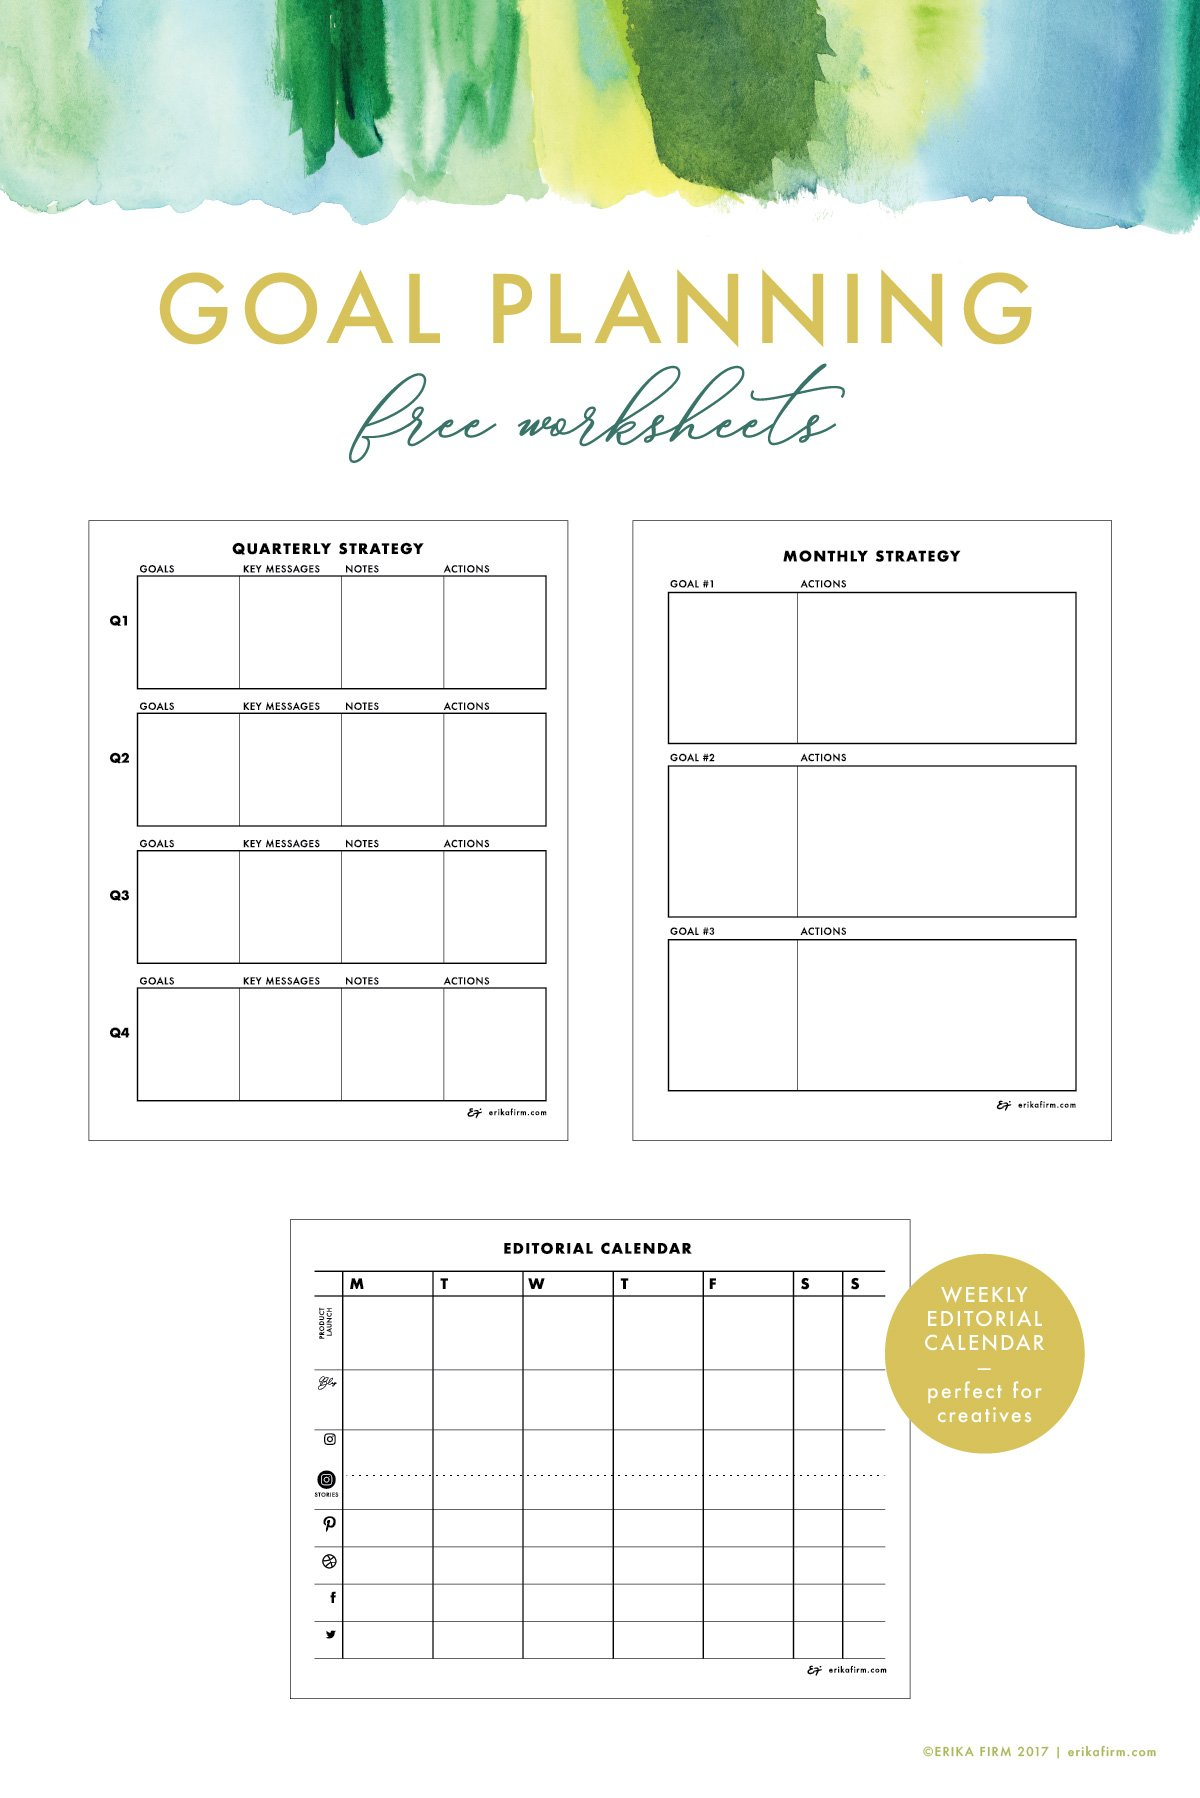 Goal Planning Worksheets For Creatives – Erika Firm With Regard To Goal Planning Worksheet